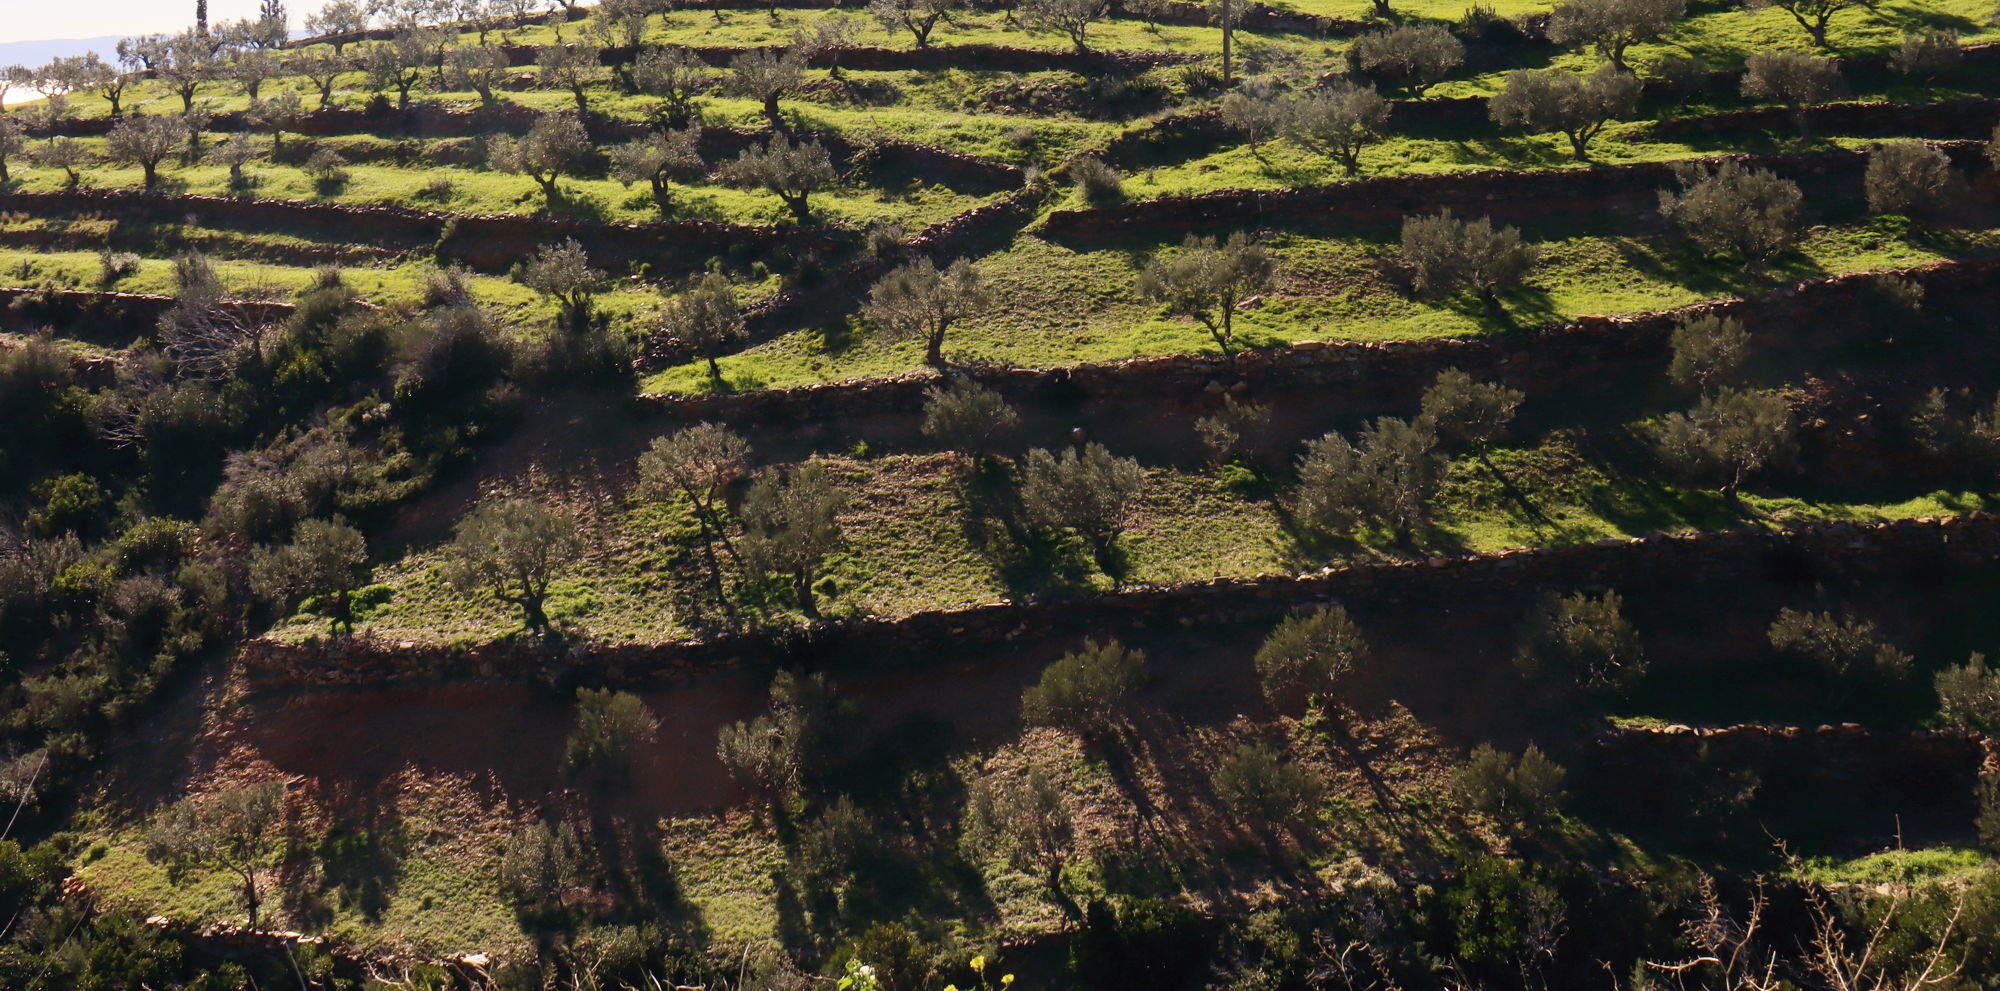 Monemvasia-Vatika topoguide: Olive grove in Lachi